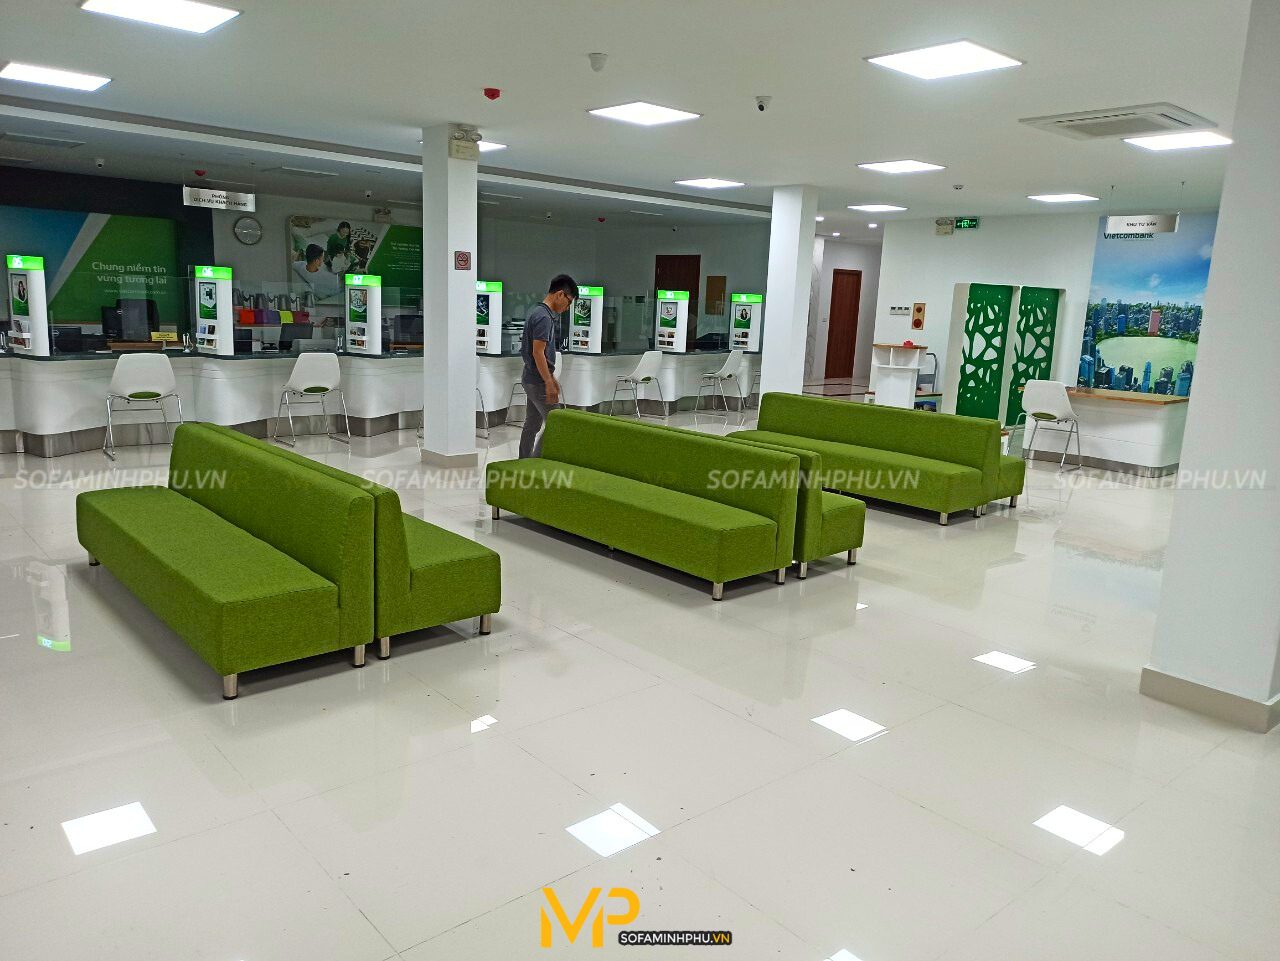 Bộ sofa văn phòng cho chi nhánh Vietcombank Hà Nội